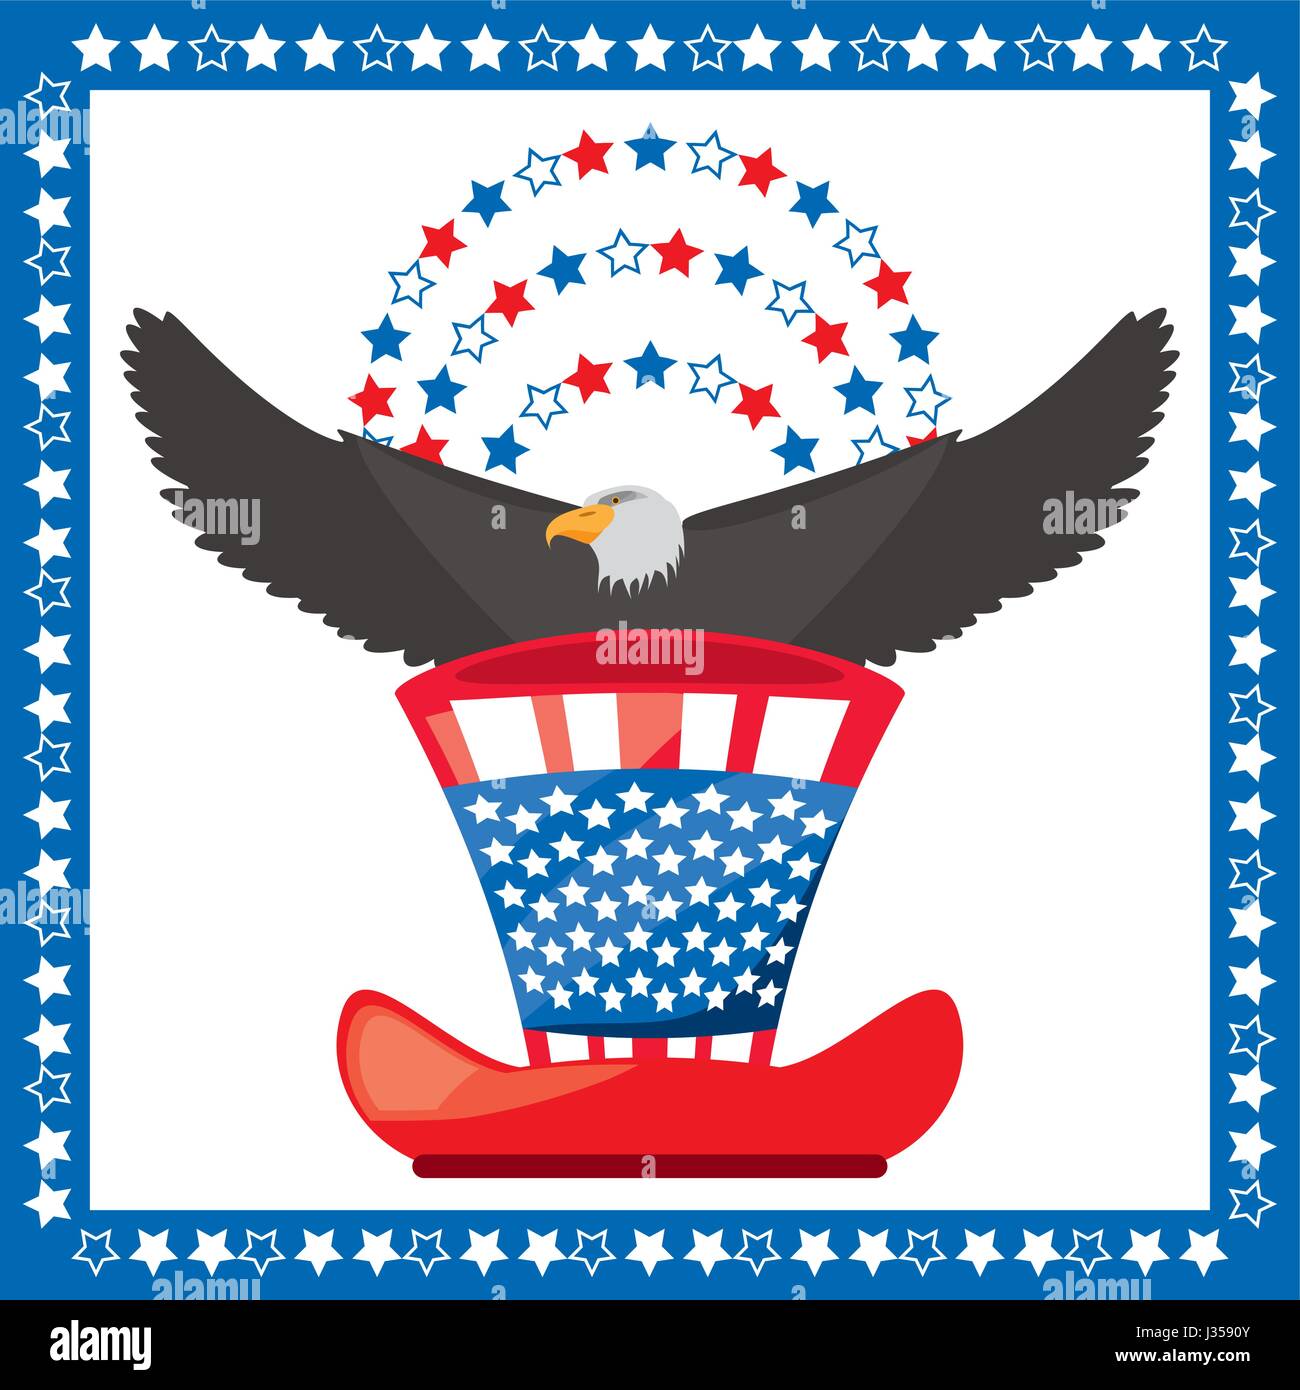 Adler und patriotischen amerikanischen Hut-symbol Stock Vektor